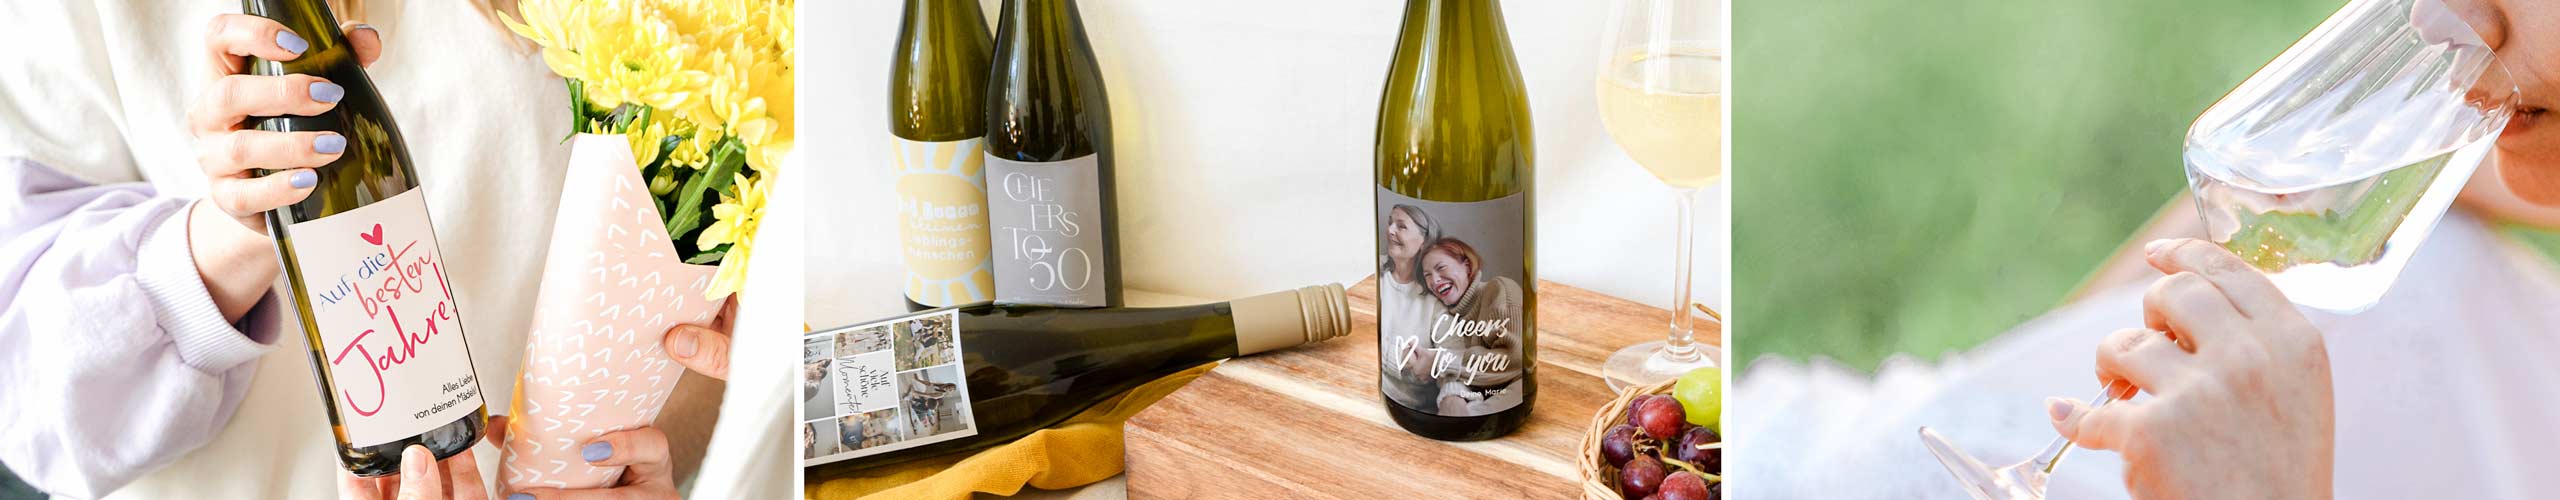 Verschiedene Weinflaschen mit personalisiertem Etikett